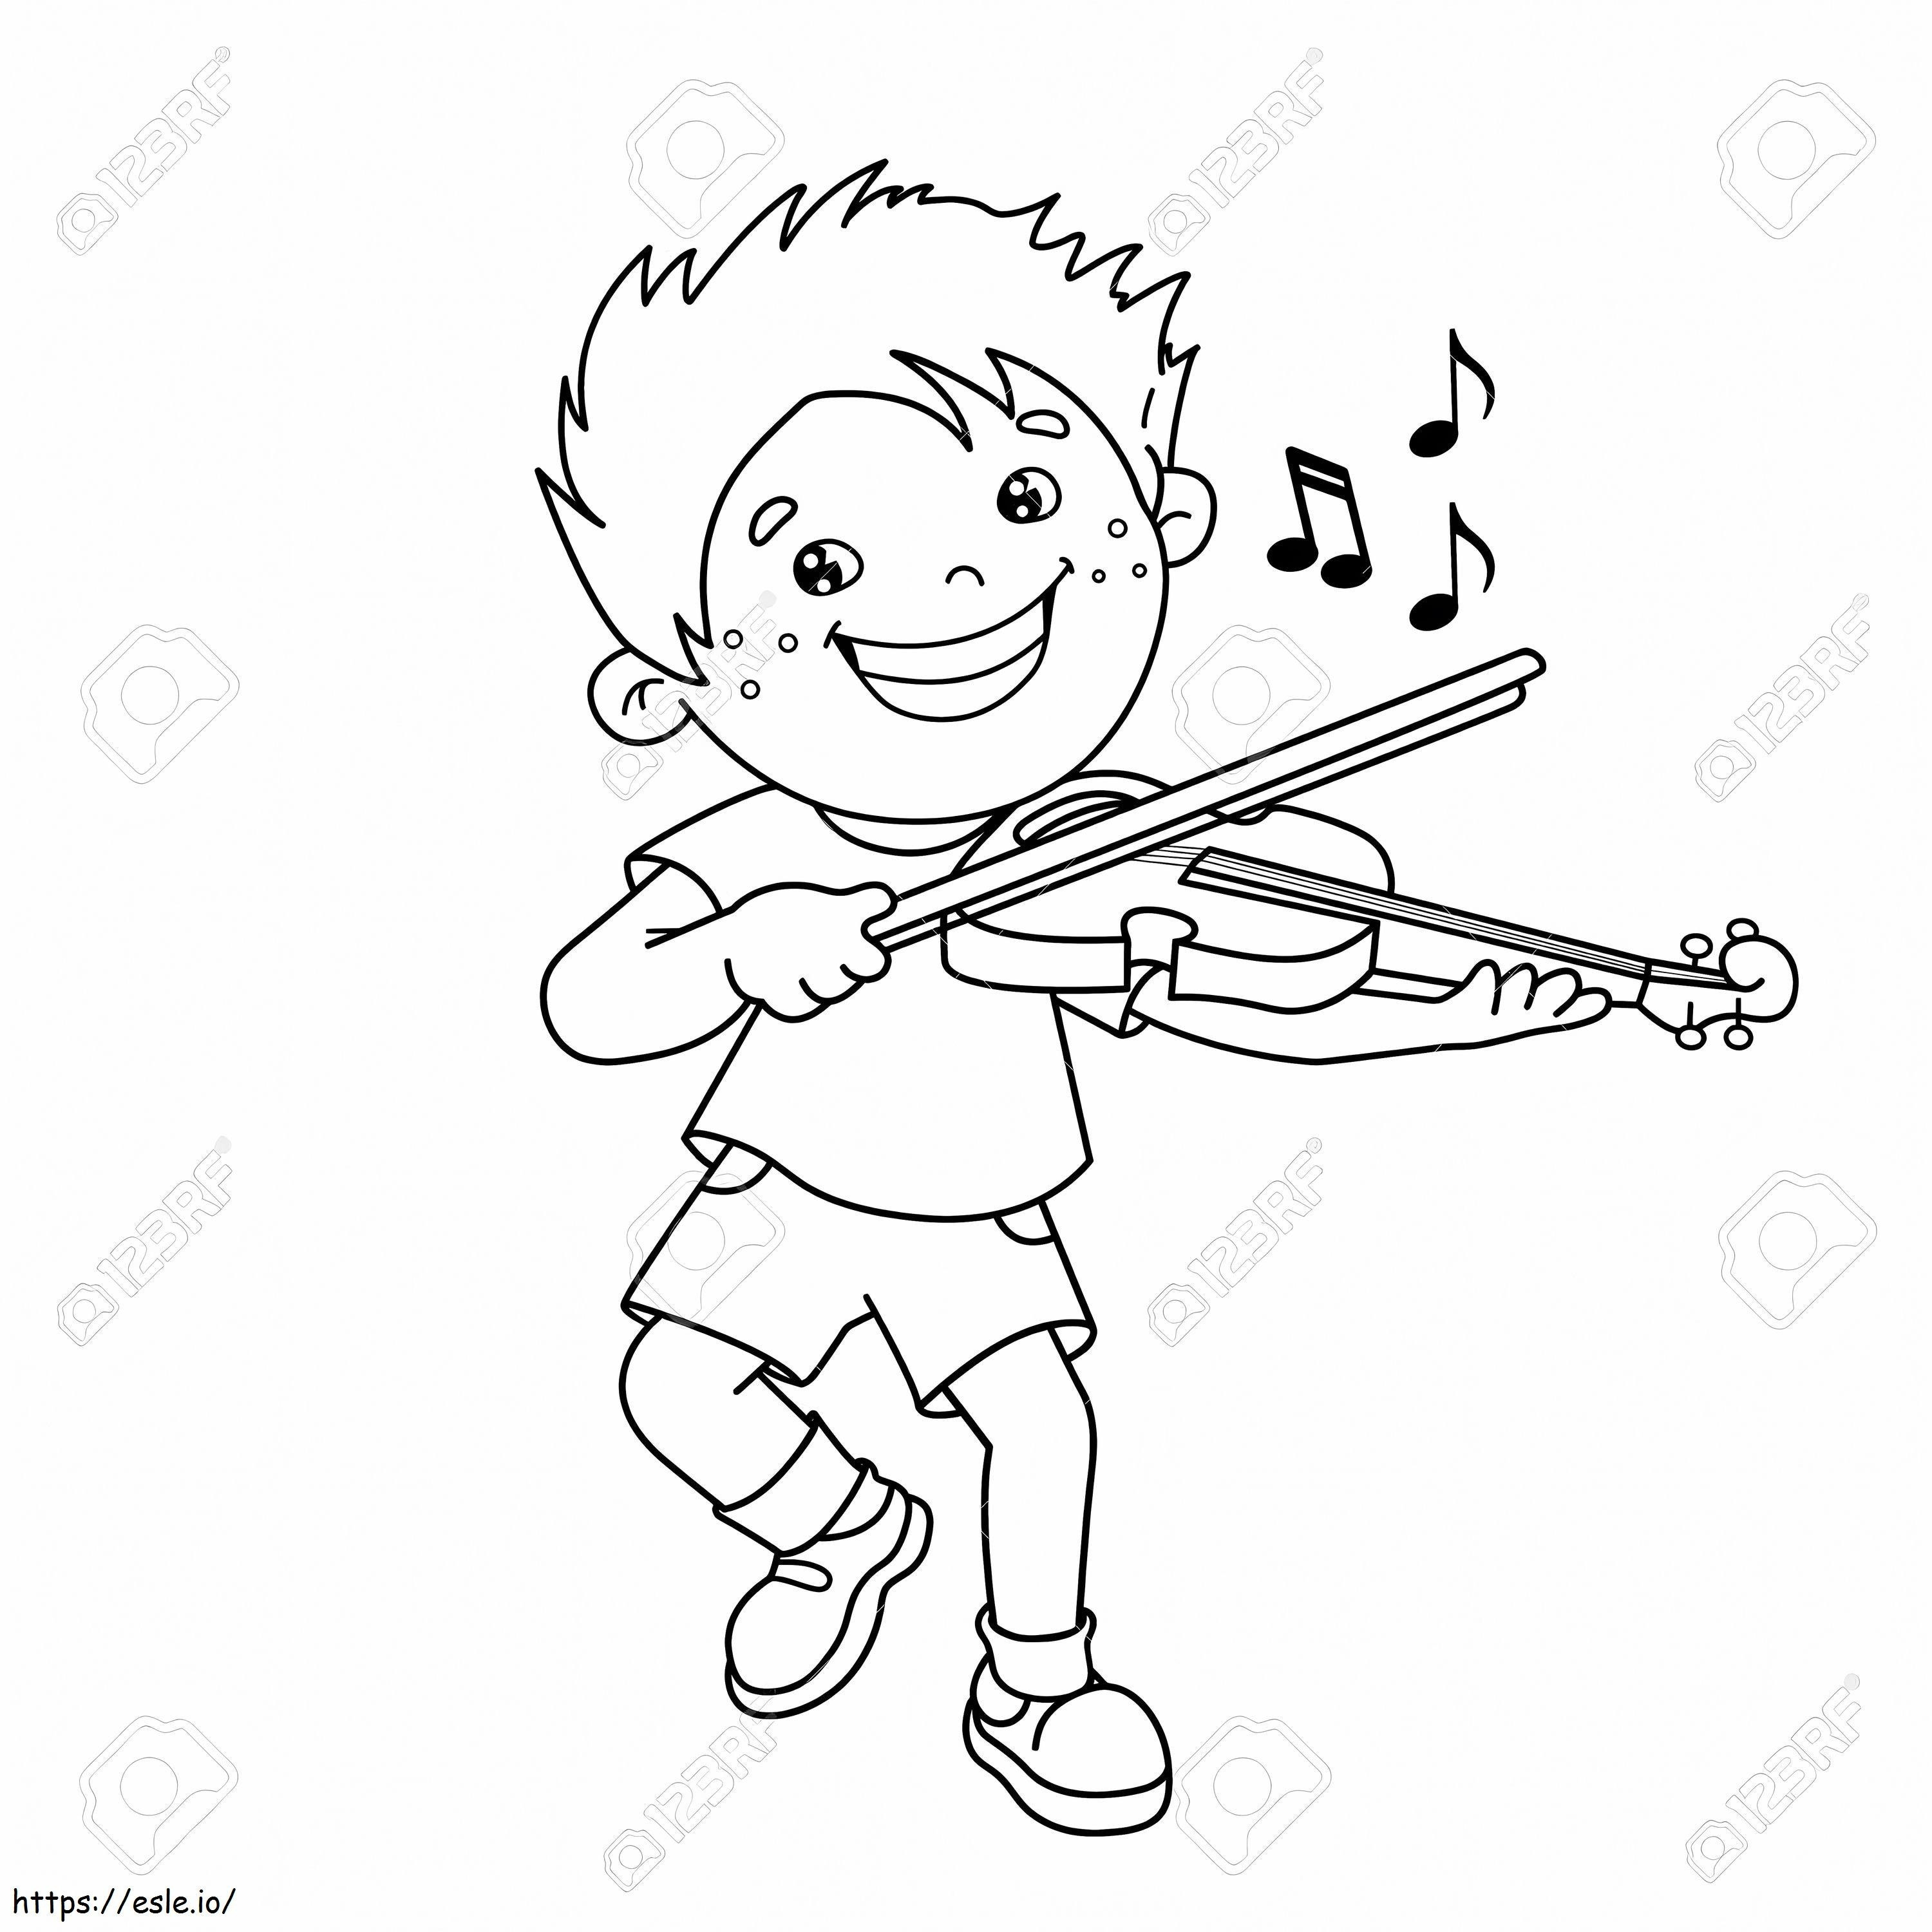 1543026113 75069501 Schiță de băiat din desene animate care cântă la vioară, instrumente muzicale, carte de colorat pentru de colorat